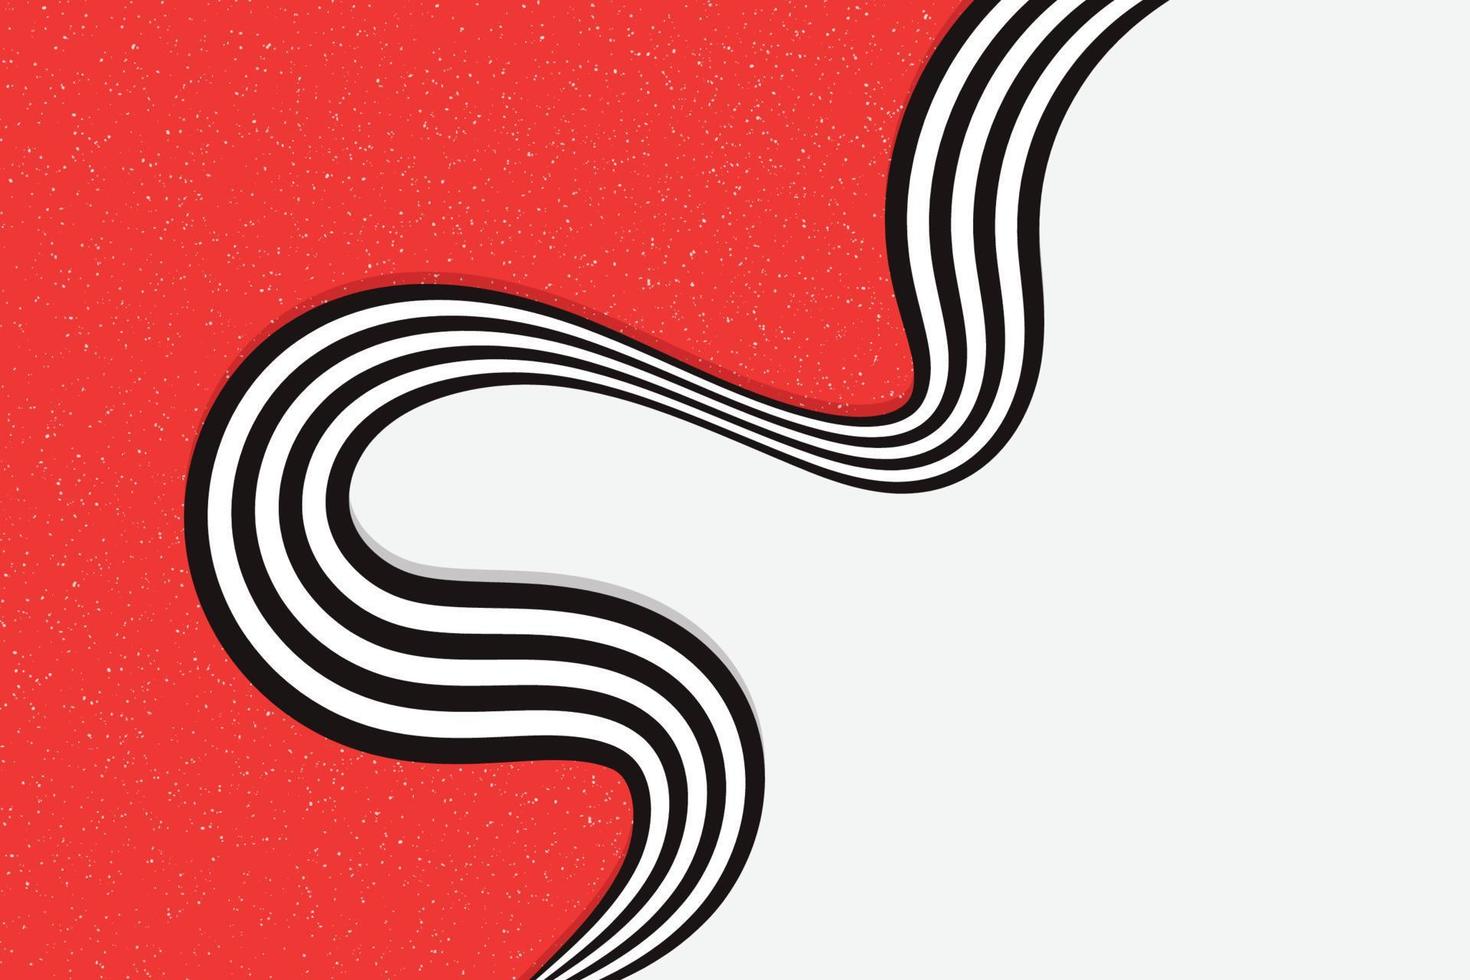 abstrait bicolore rouge et blanc avec forme rayée torsadée. illustration de lignes dynamiques en noir et blanc avec superposition de texture granuleuse vecteur